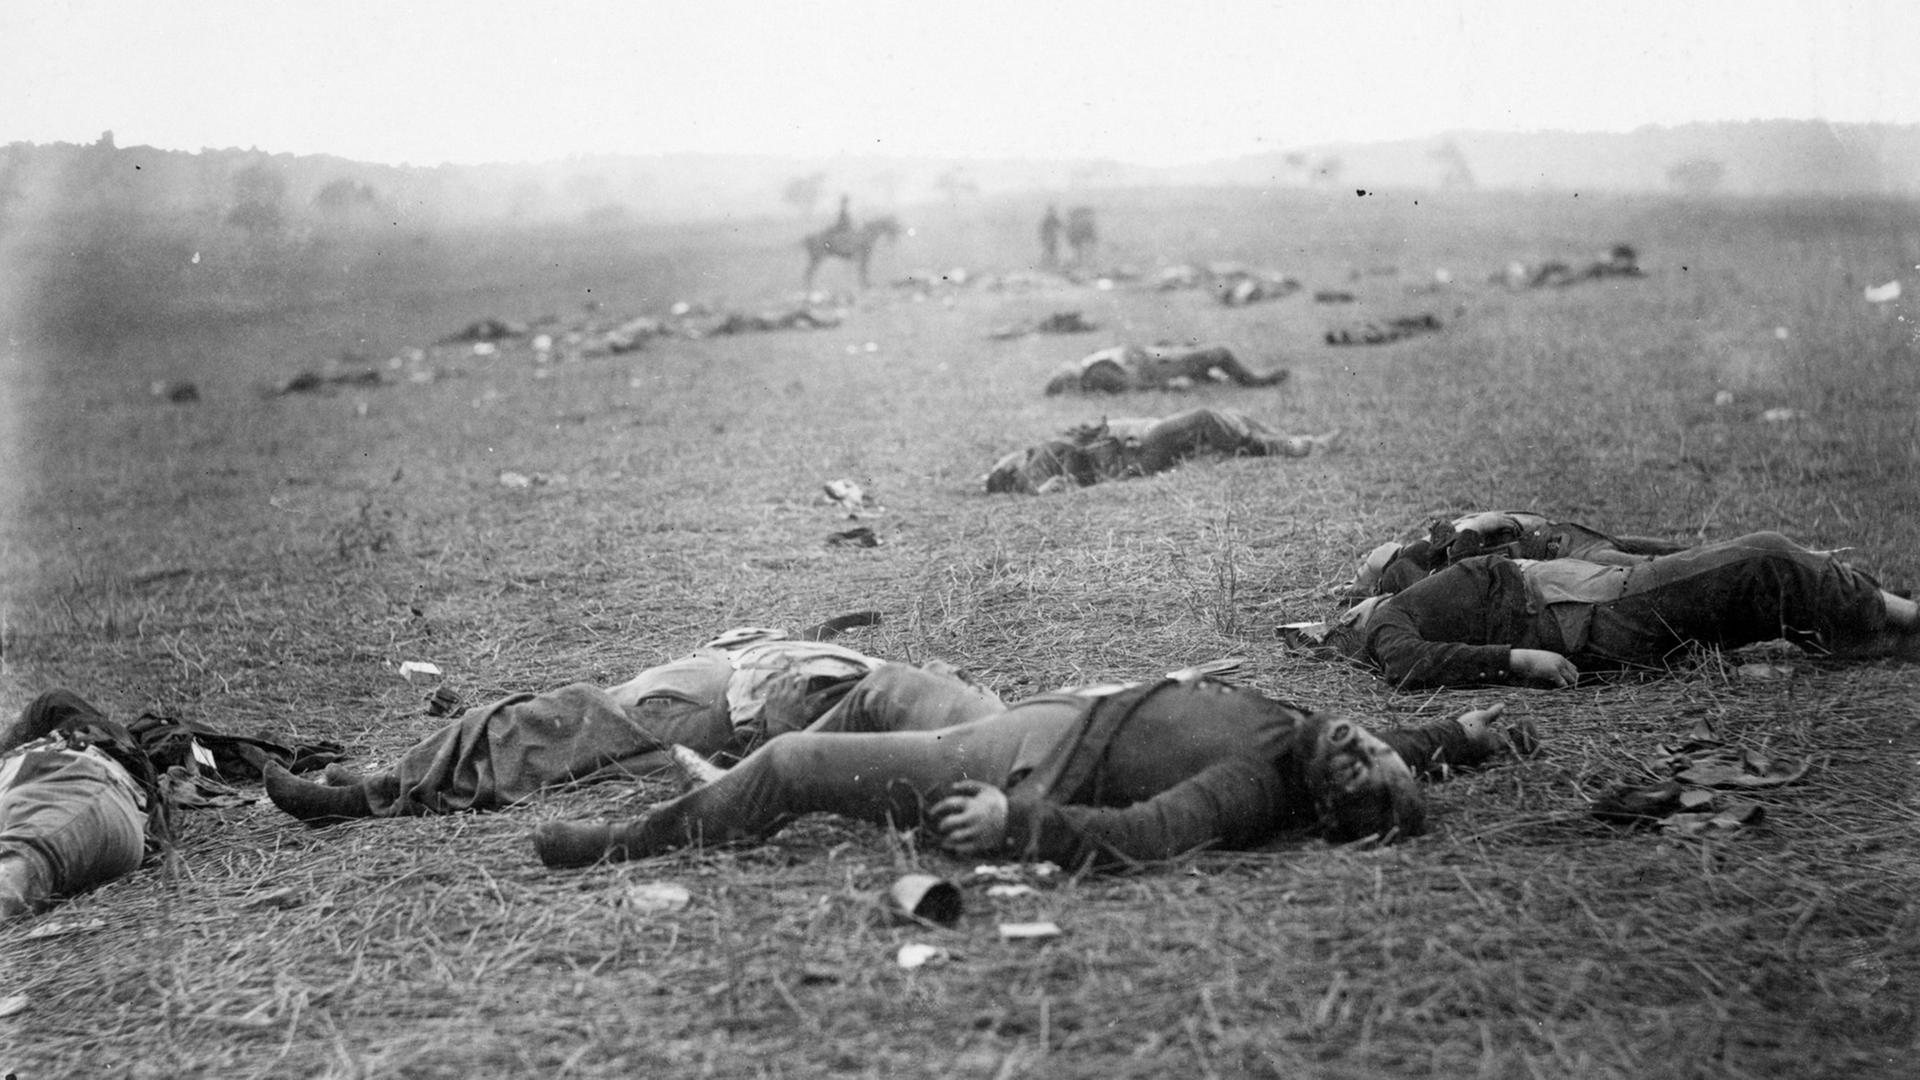 Auf dem Bild zu sehen ist das mit Verletzten und Toten übersäte Schlachtfeld von Gettysburg.